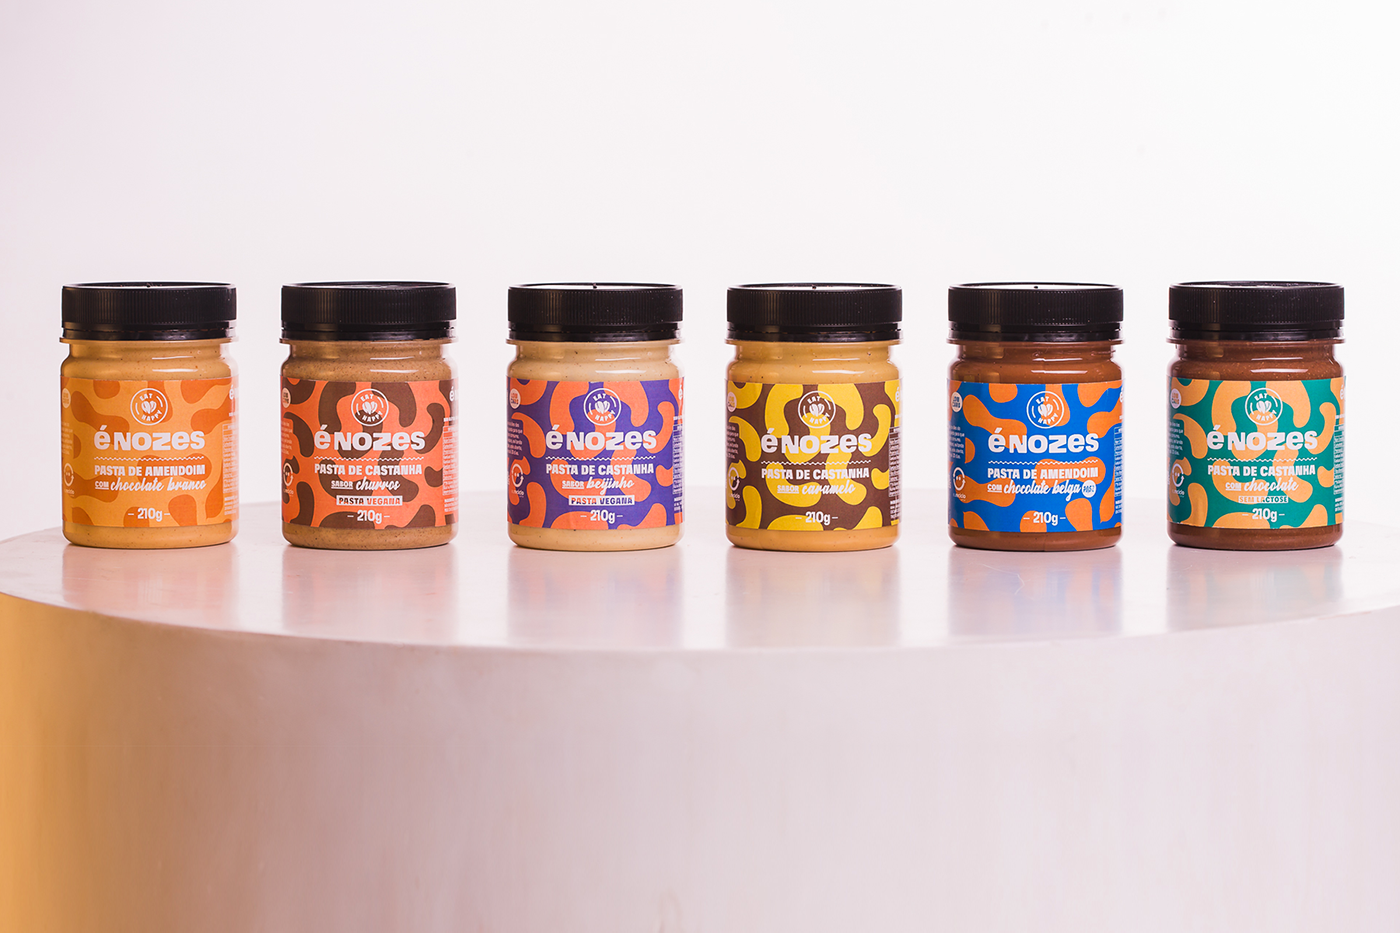 branding  graphic design  Packaging emabalagem pasta de amendoim peanut butter nuts é nozes identidade visual rótulo